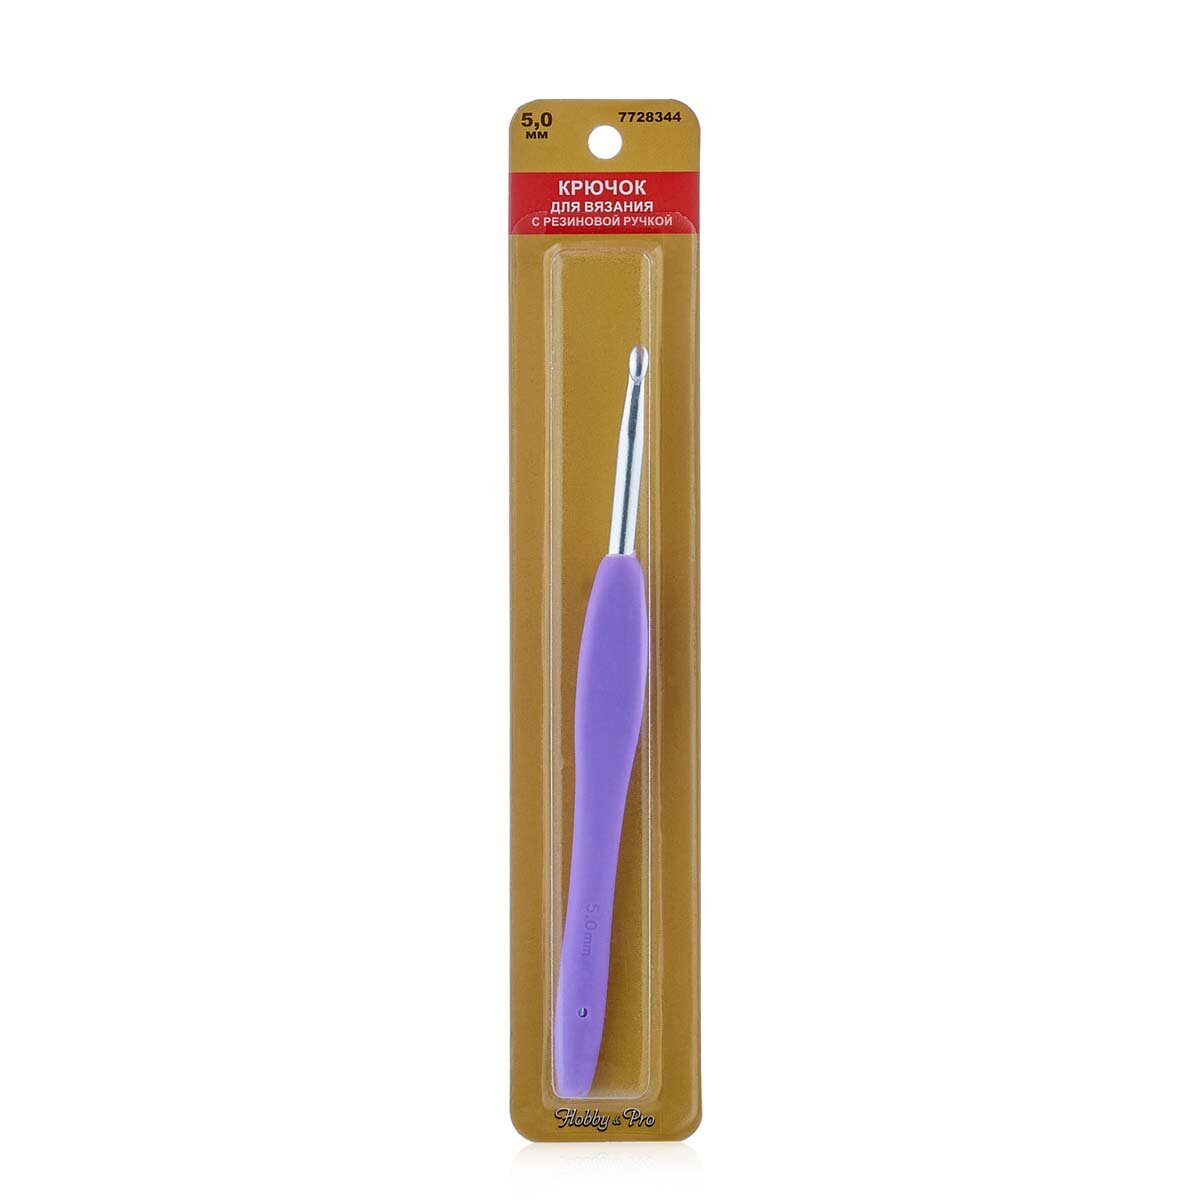 Крючок для вязания, диаметр 5 мм с резиновой ручкой, 14 см, Hobby&Pro